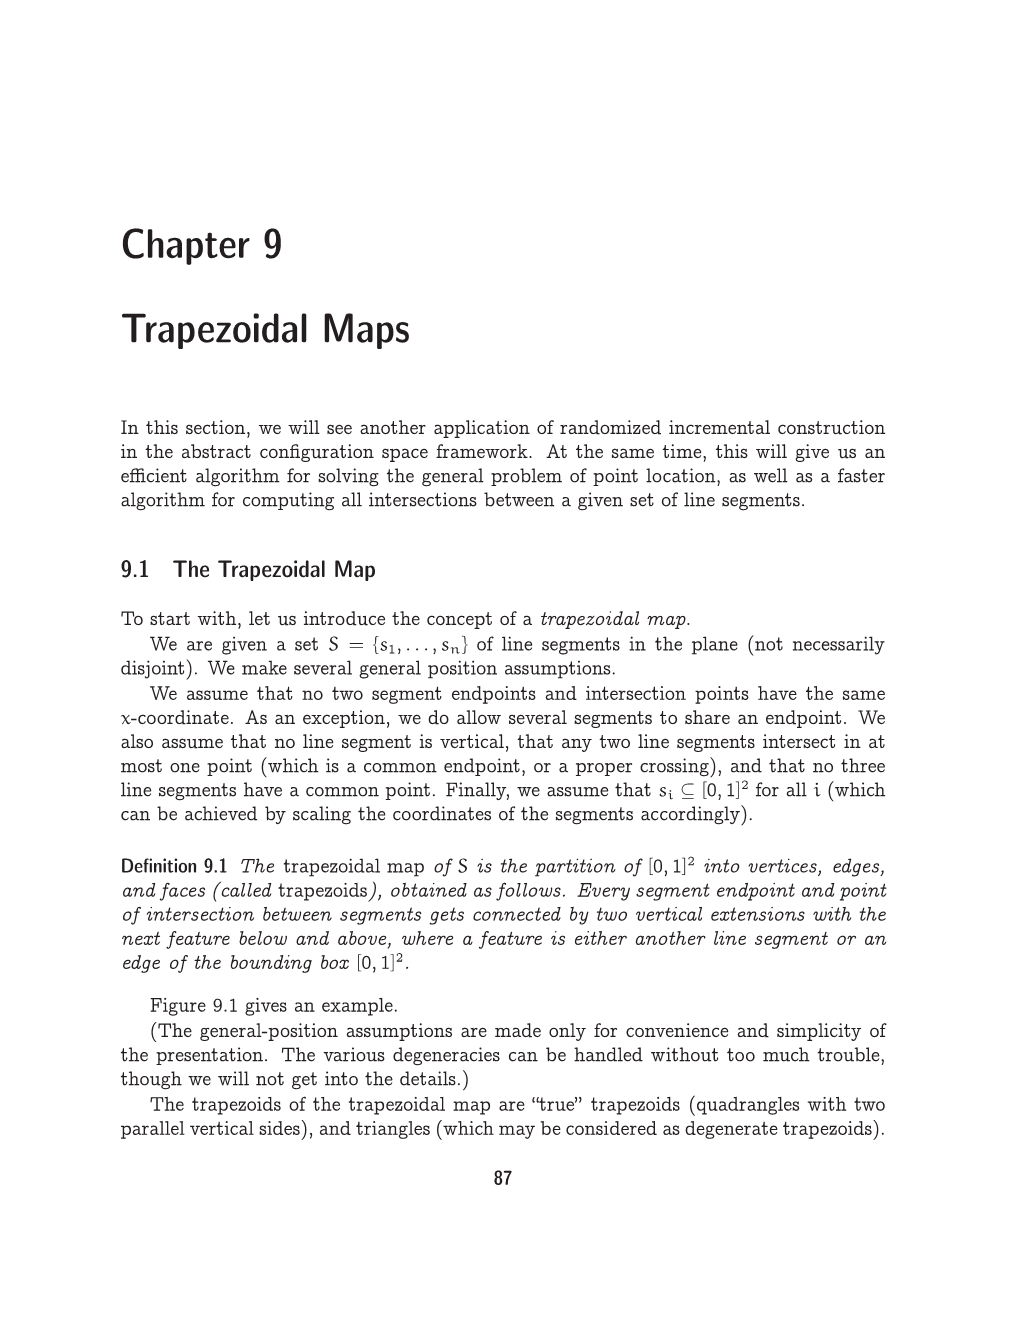 Chapter 9 Trapezoidal Maps